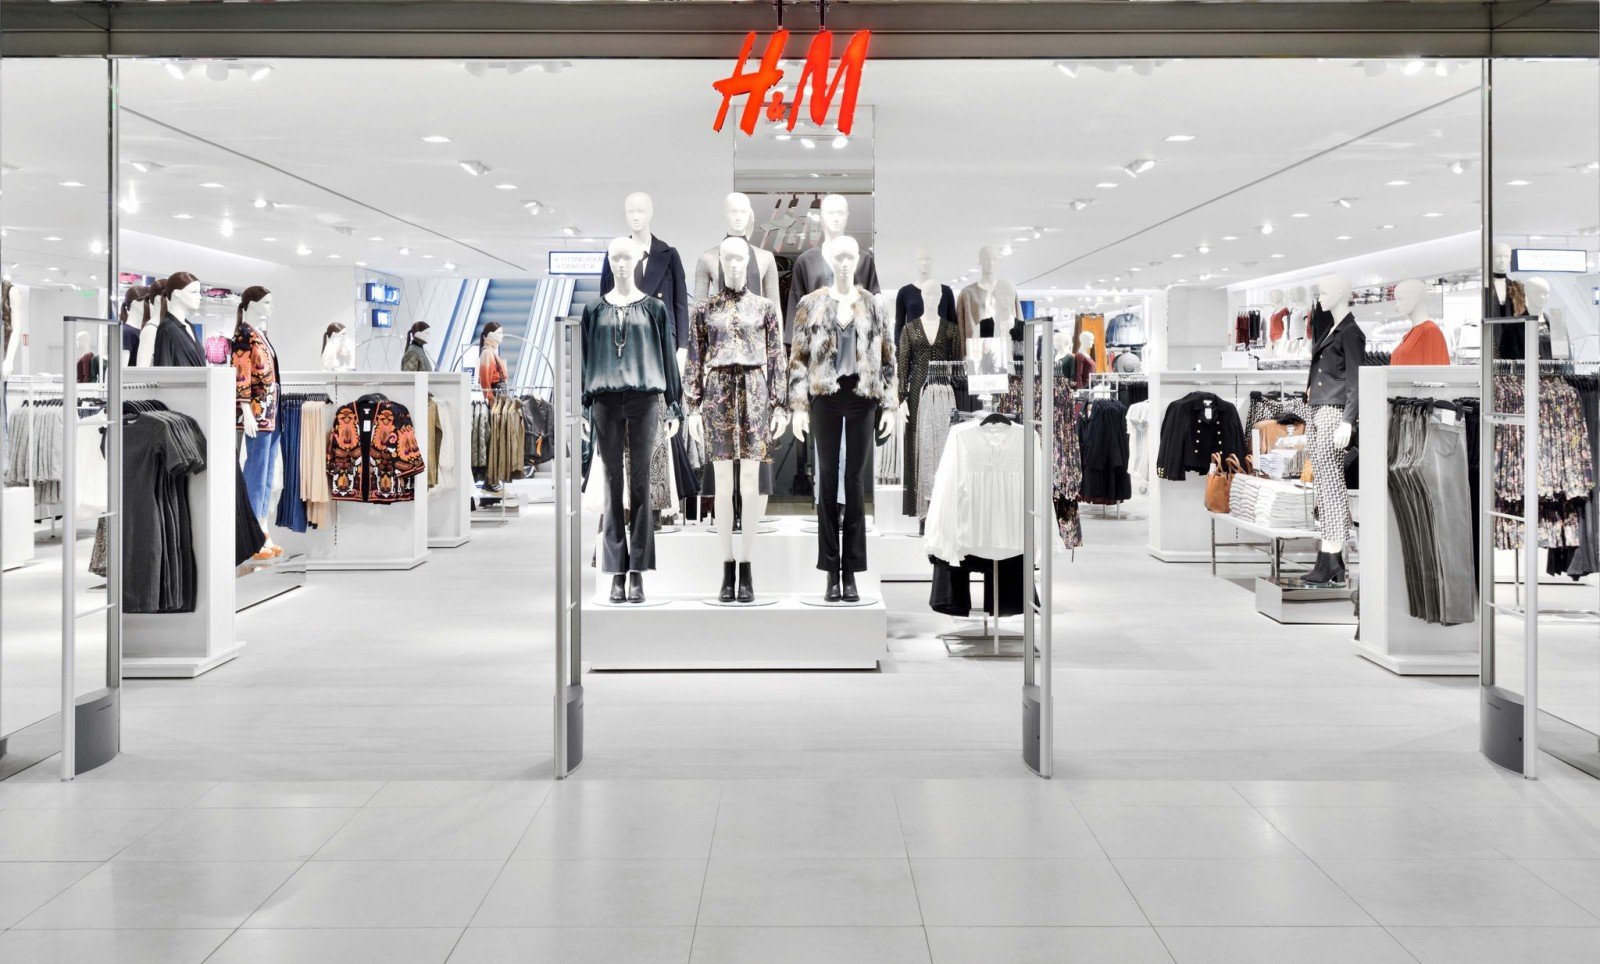 Барнаул попал в "новую волну" открытия магазинов одежды H&M